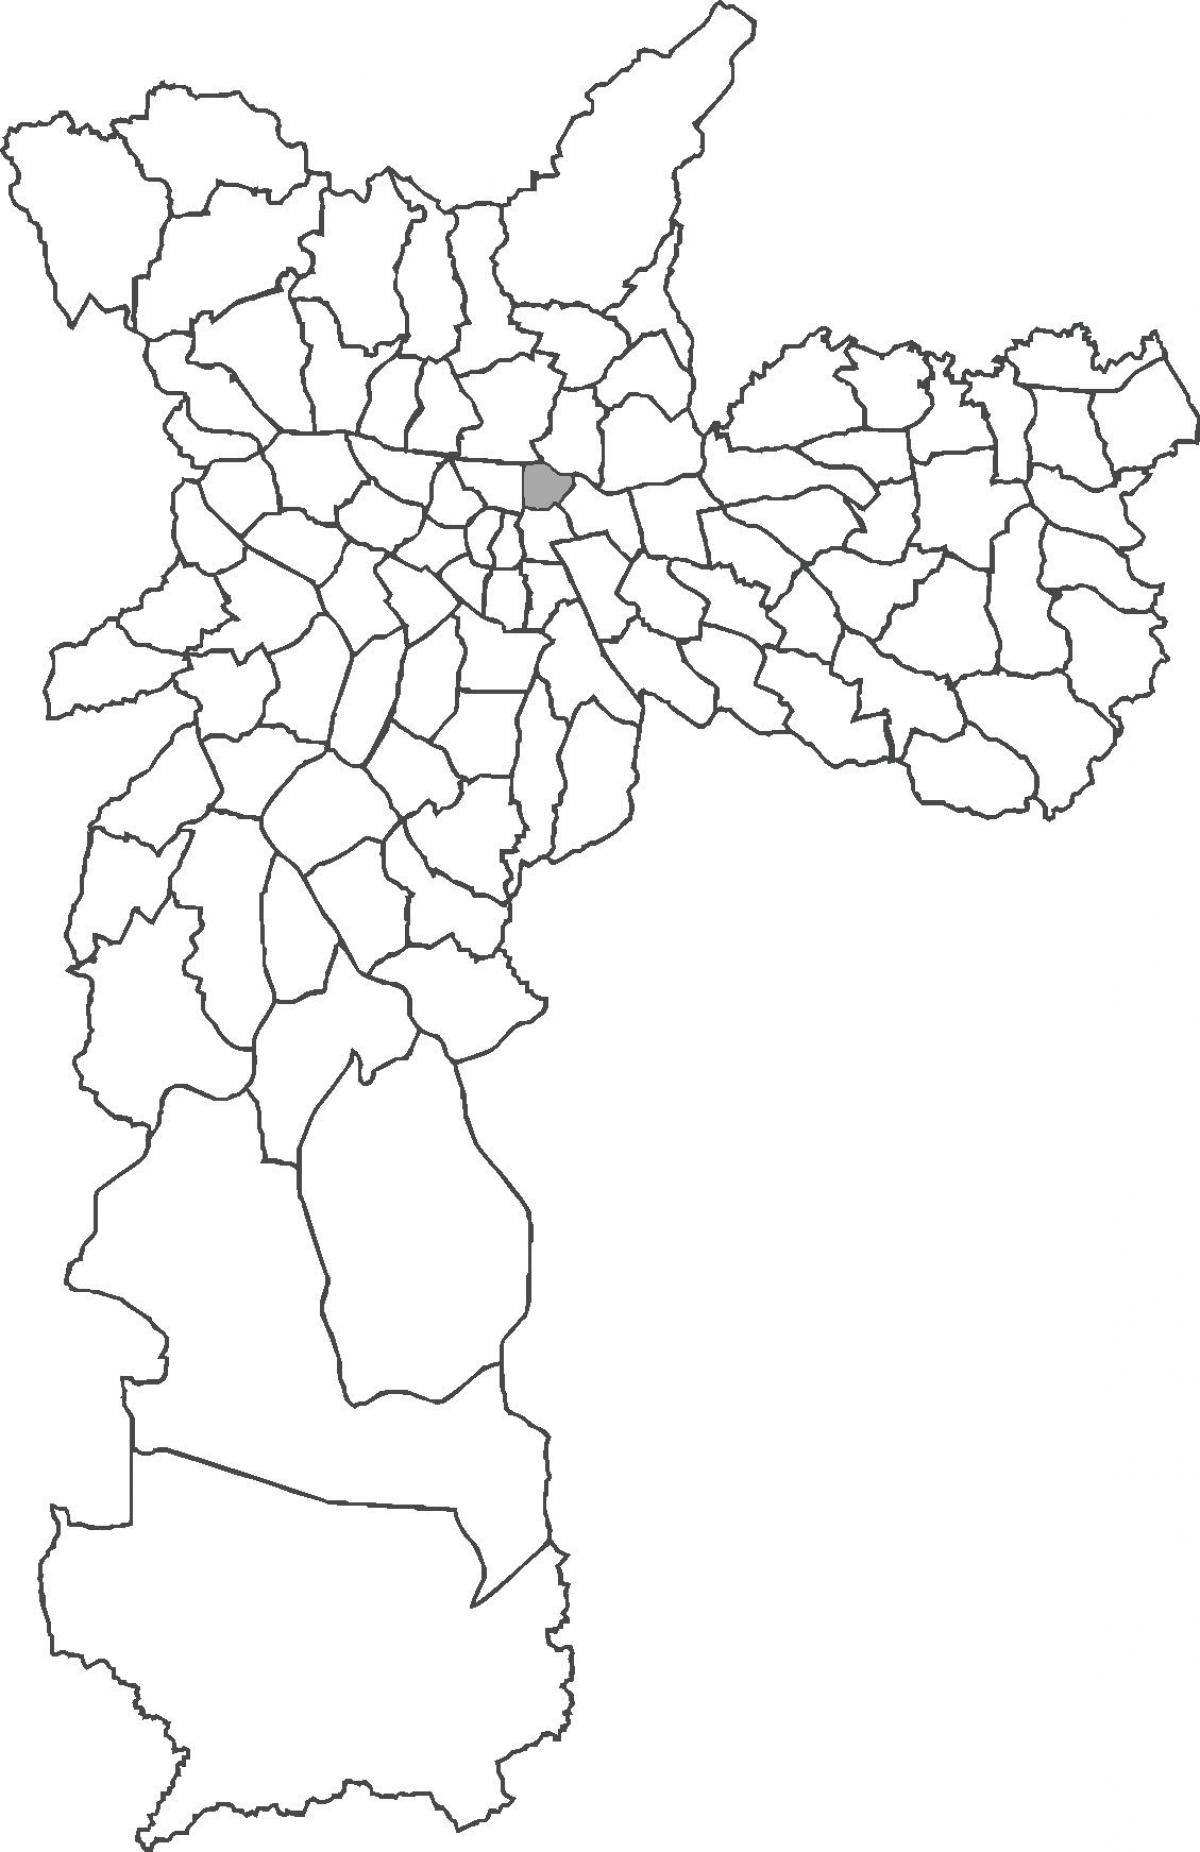 Karte Pari rajons